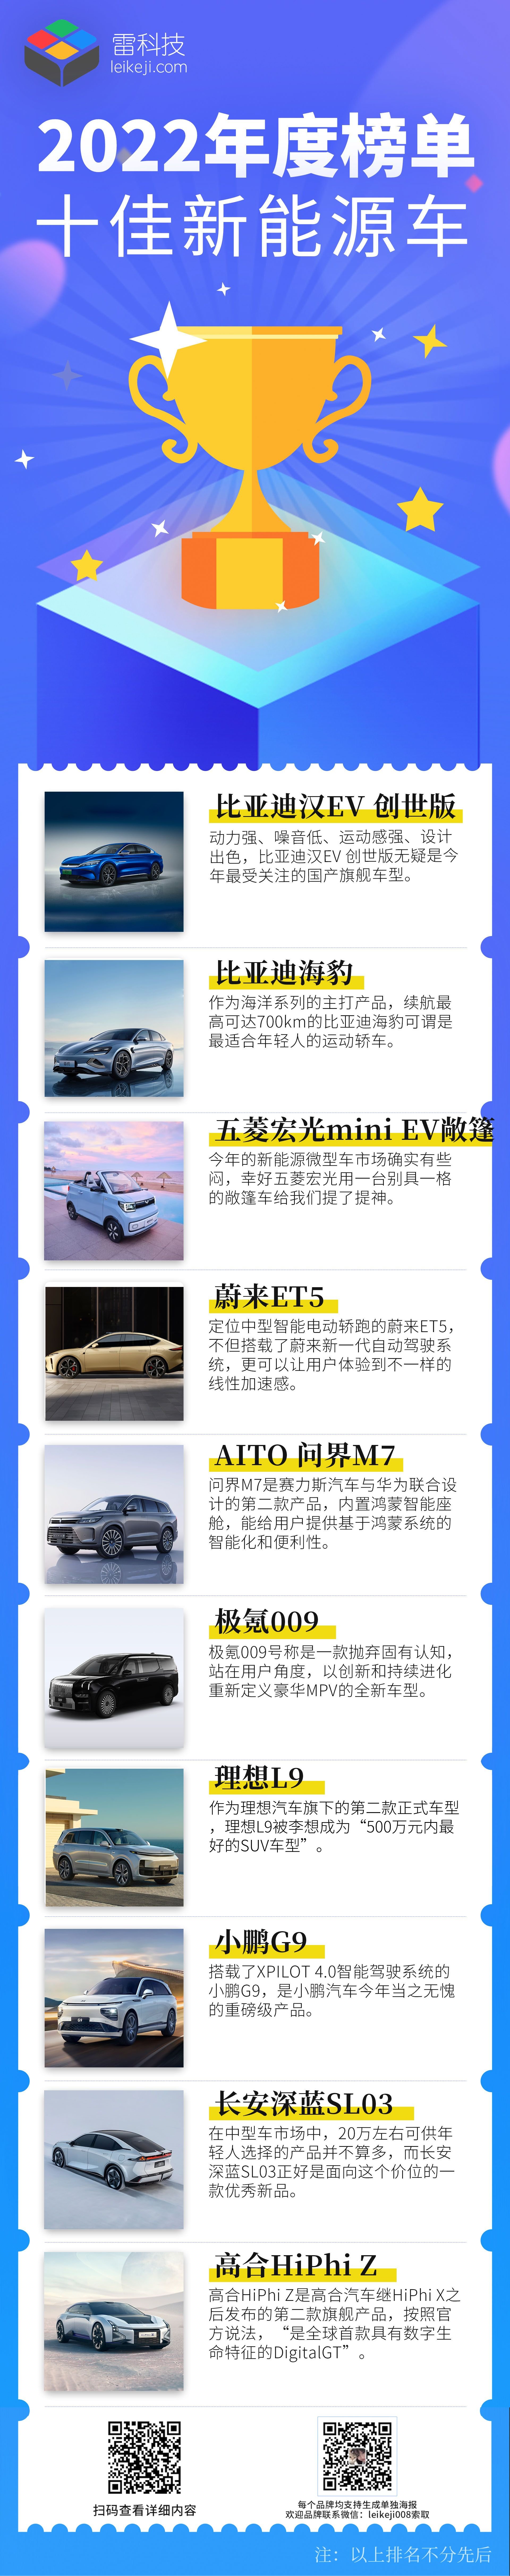 十佳新能源车.jpg